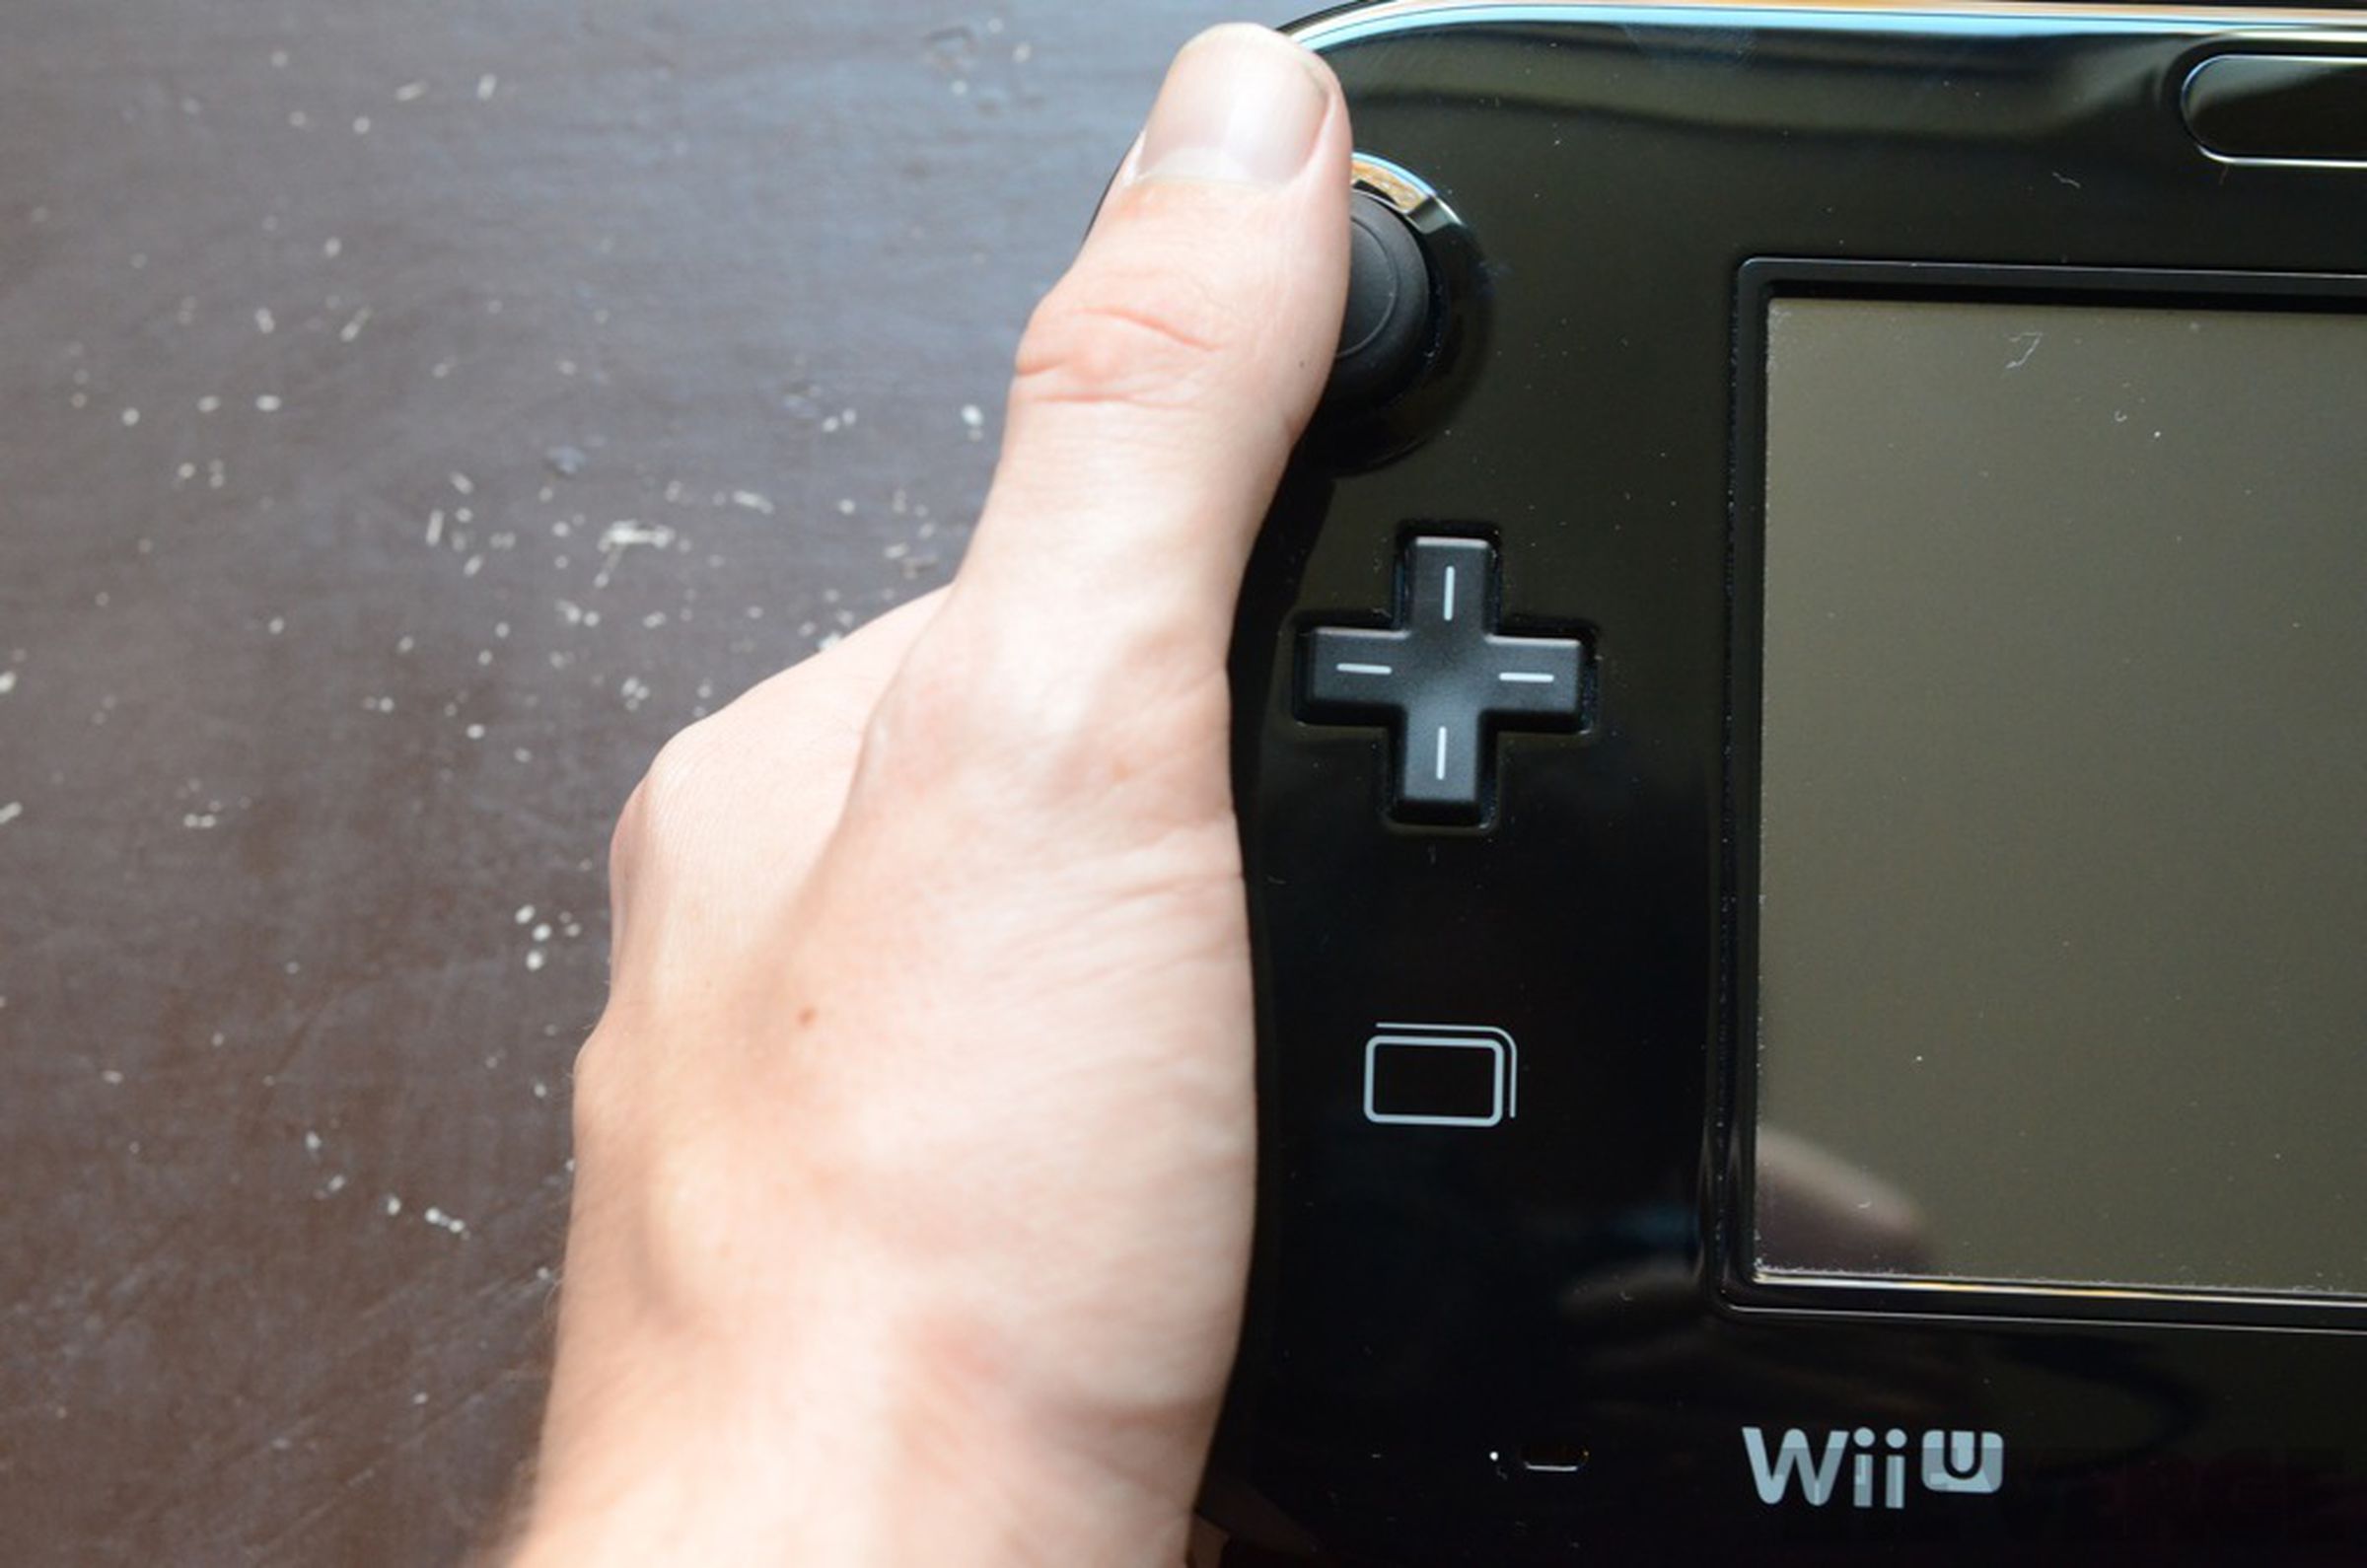 Nintendo Wii U hands-on pictures